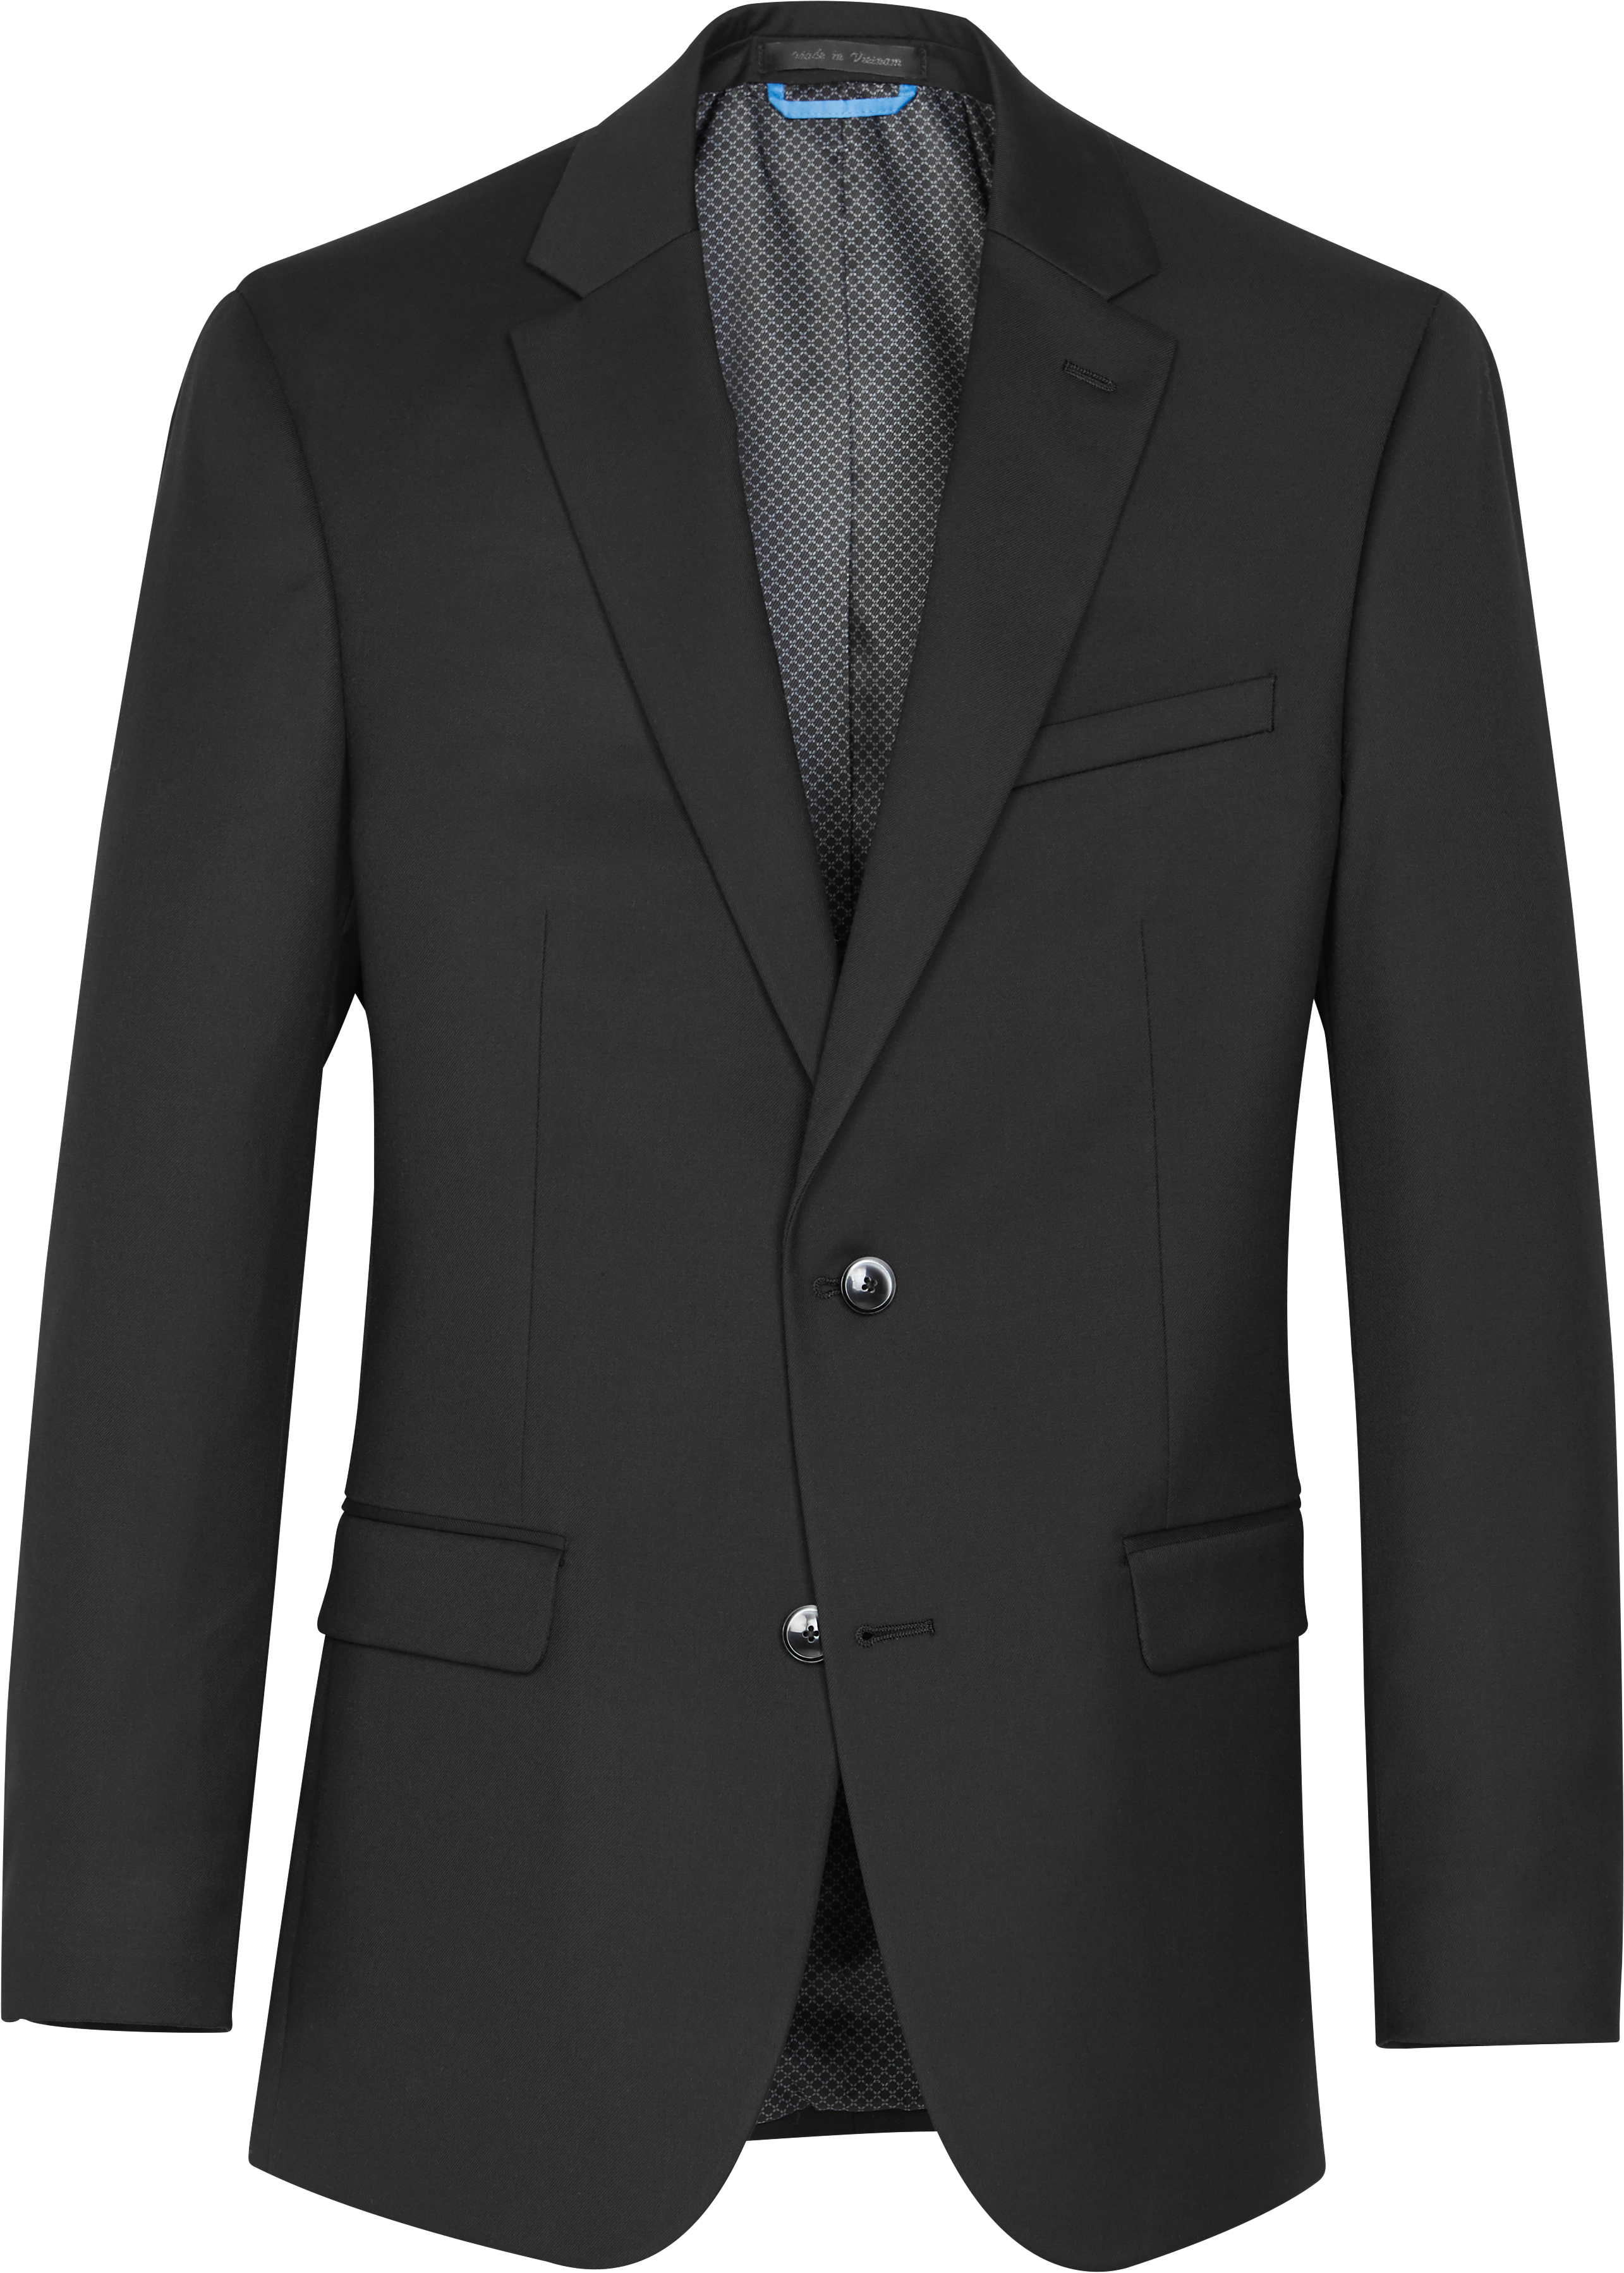 van heusen suits online